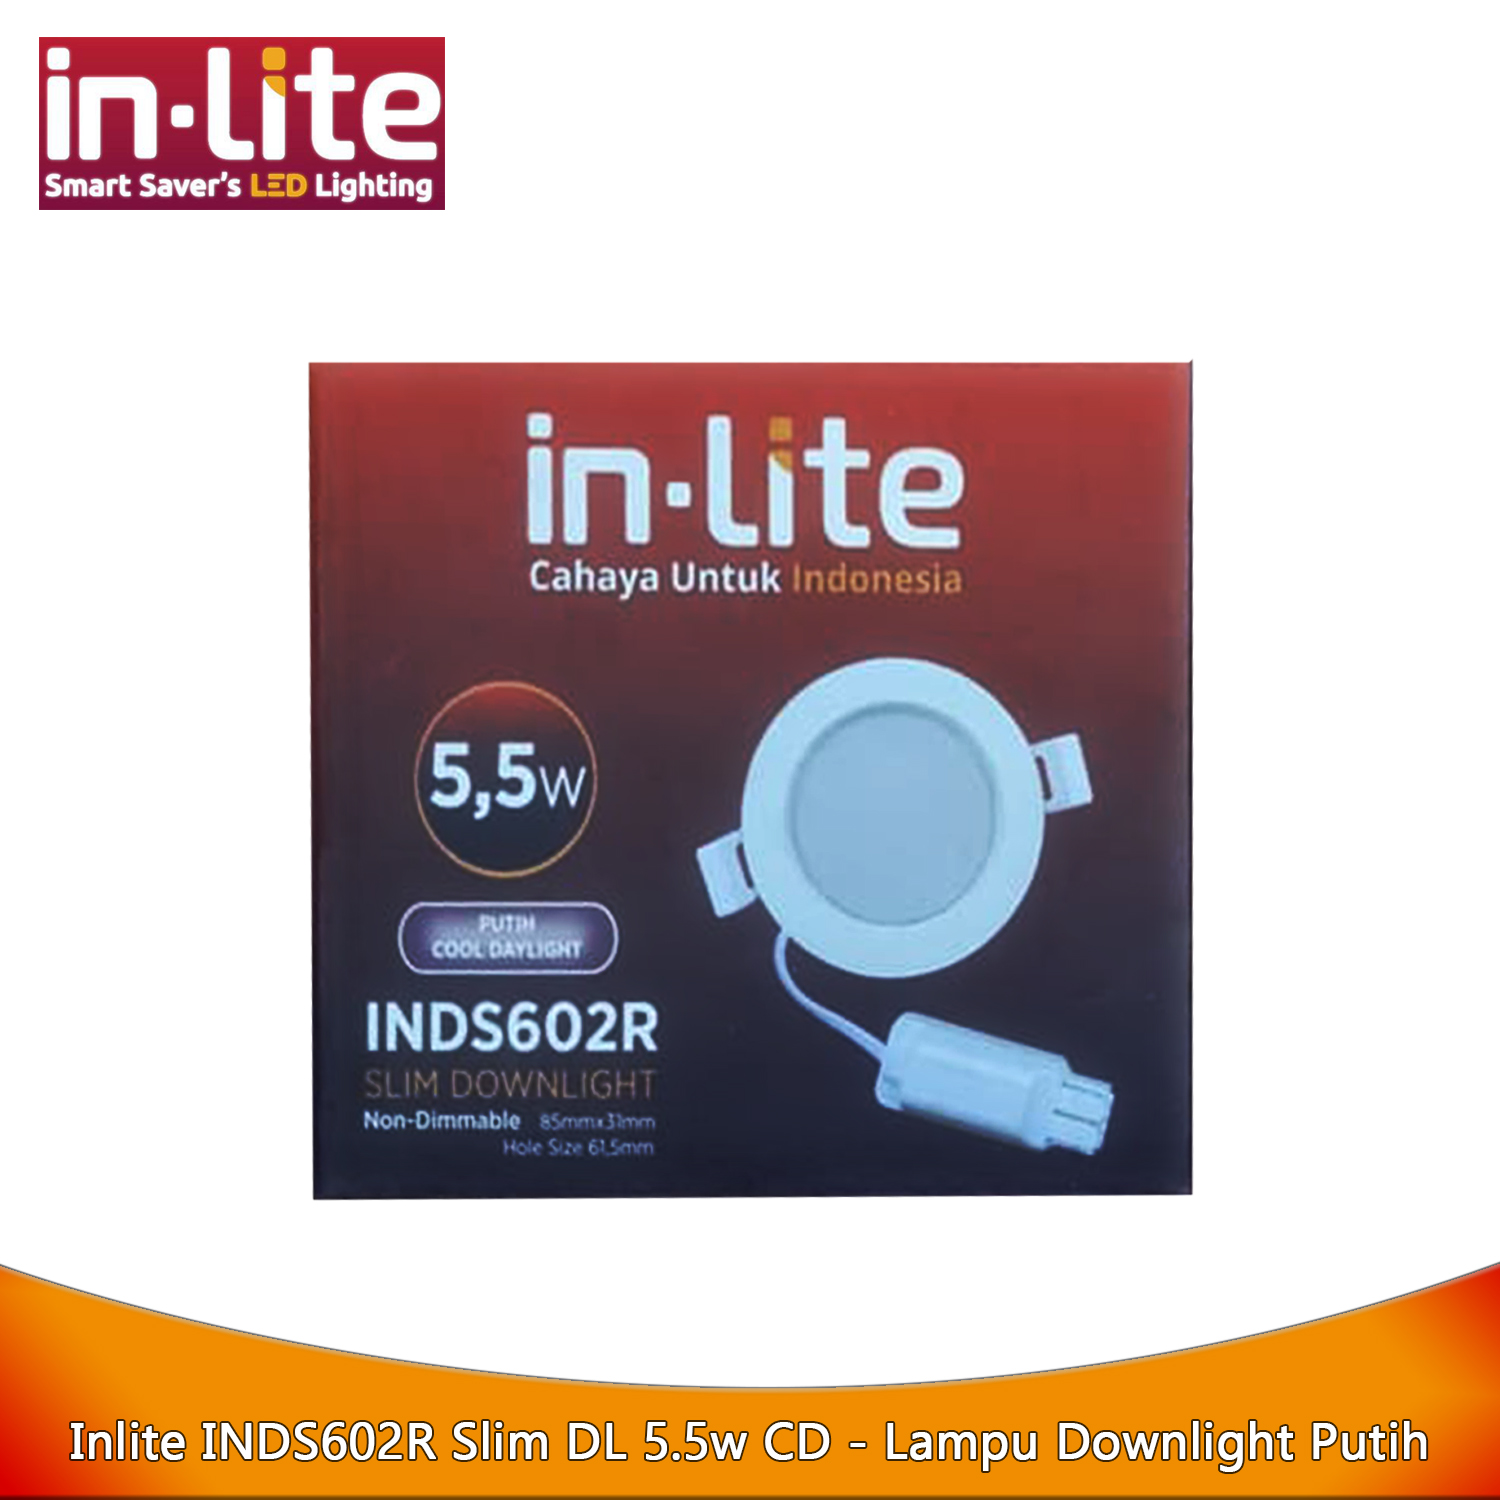 Inlite INDS602R Slim DL 5.5w CD - Lampu Downlight Putih